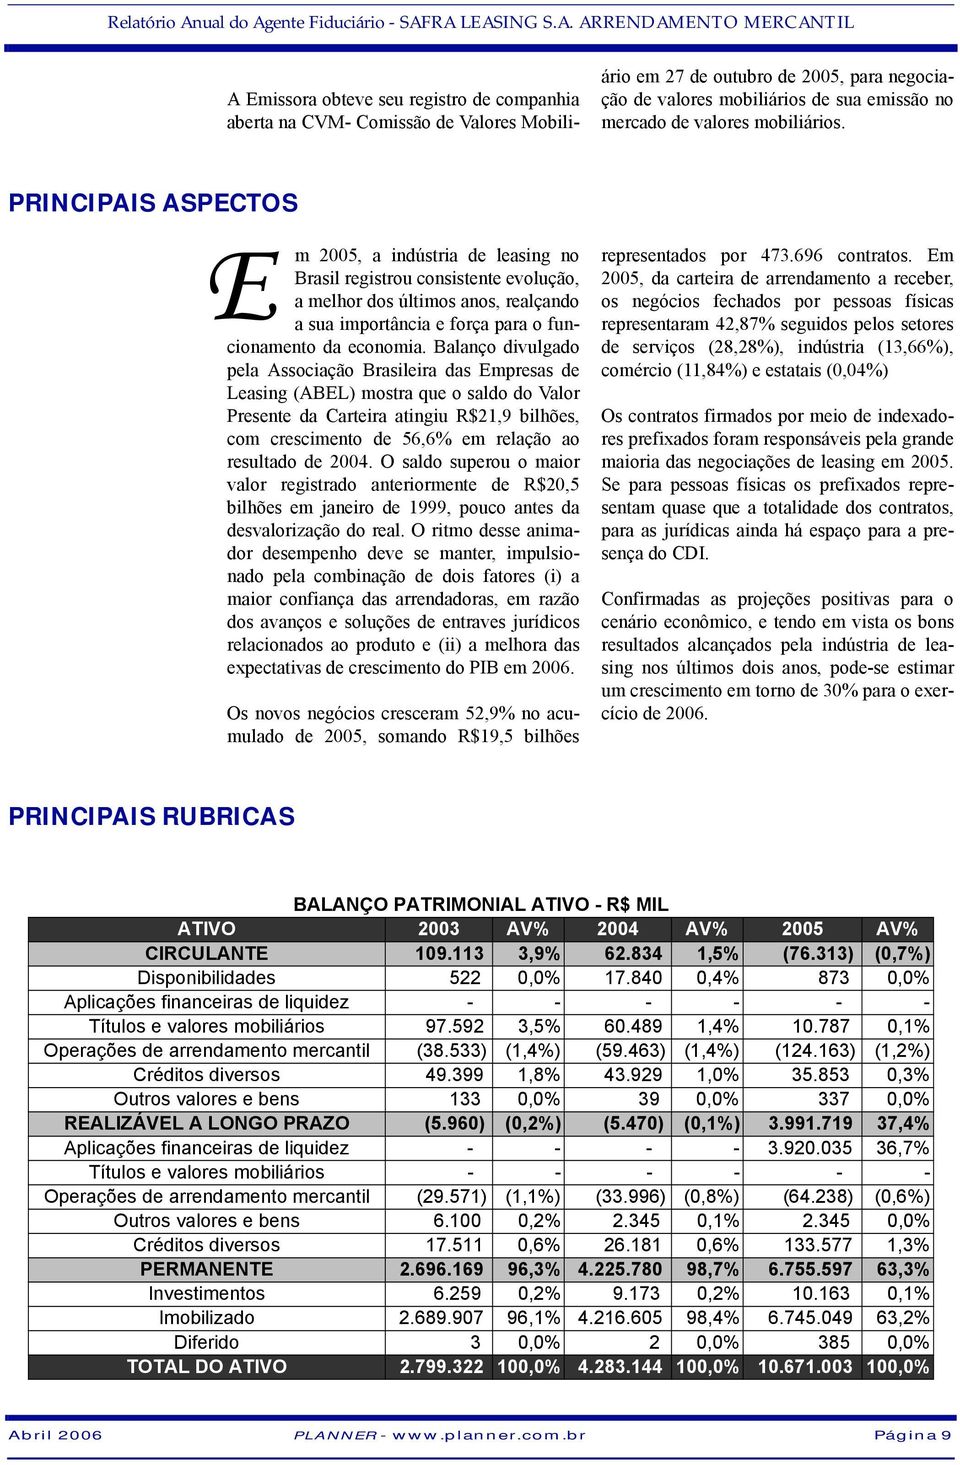 PRINCIPAIS ASPECTOS E m 2005, a indústria de leasing no Brasil registrou consistente evolução, a melhor dos últimos anos, realçando a sua importância e força para o funcionamento da economia.